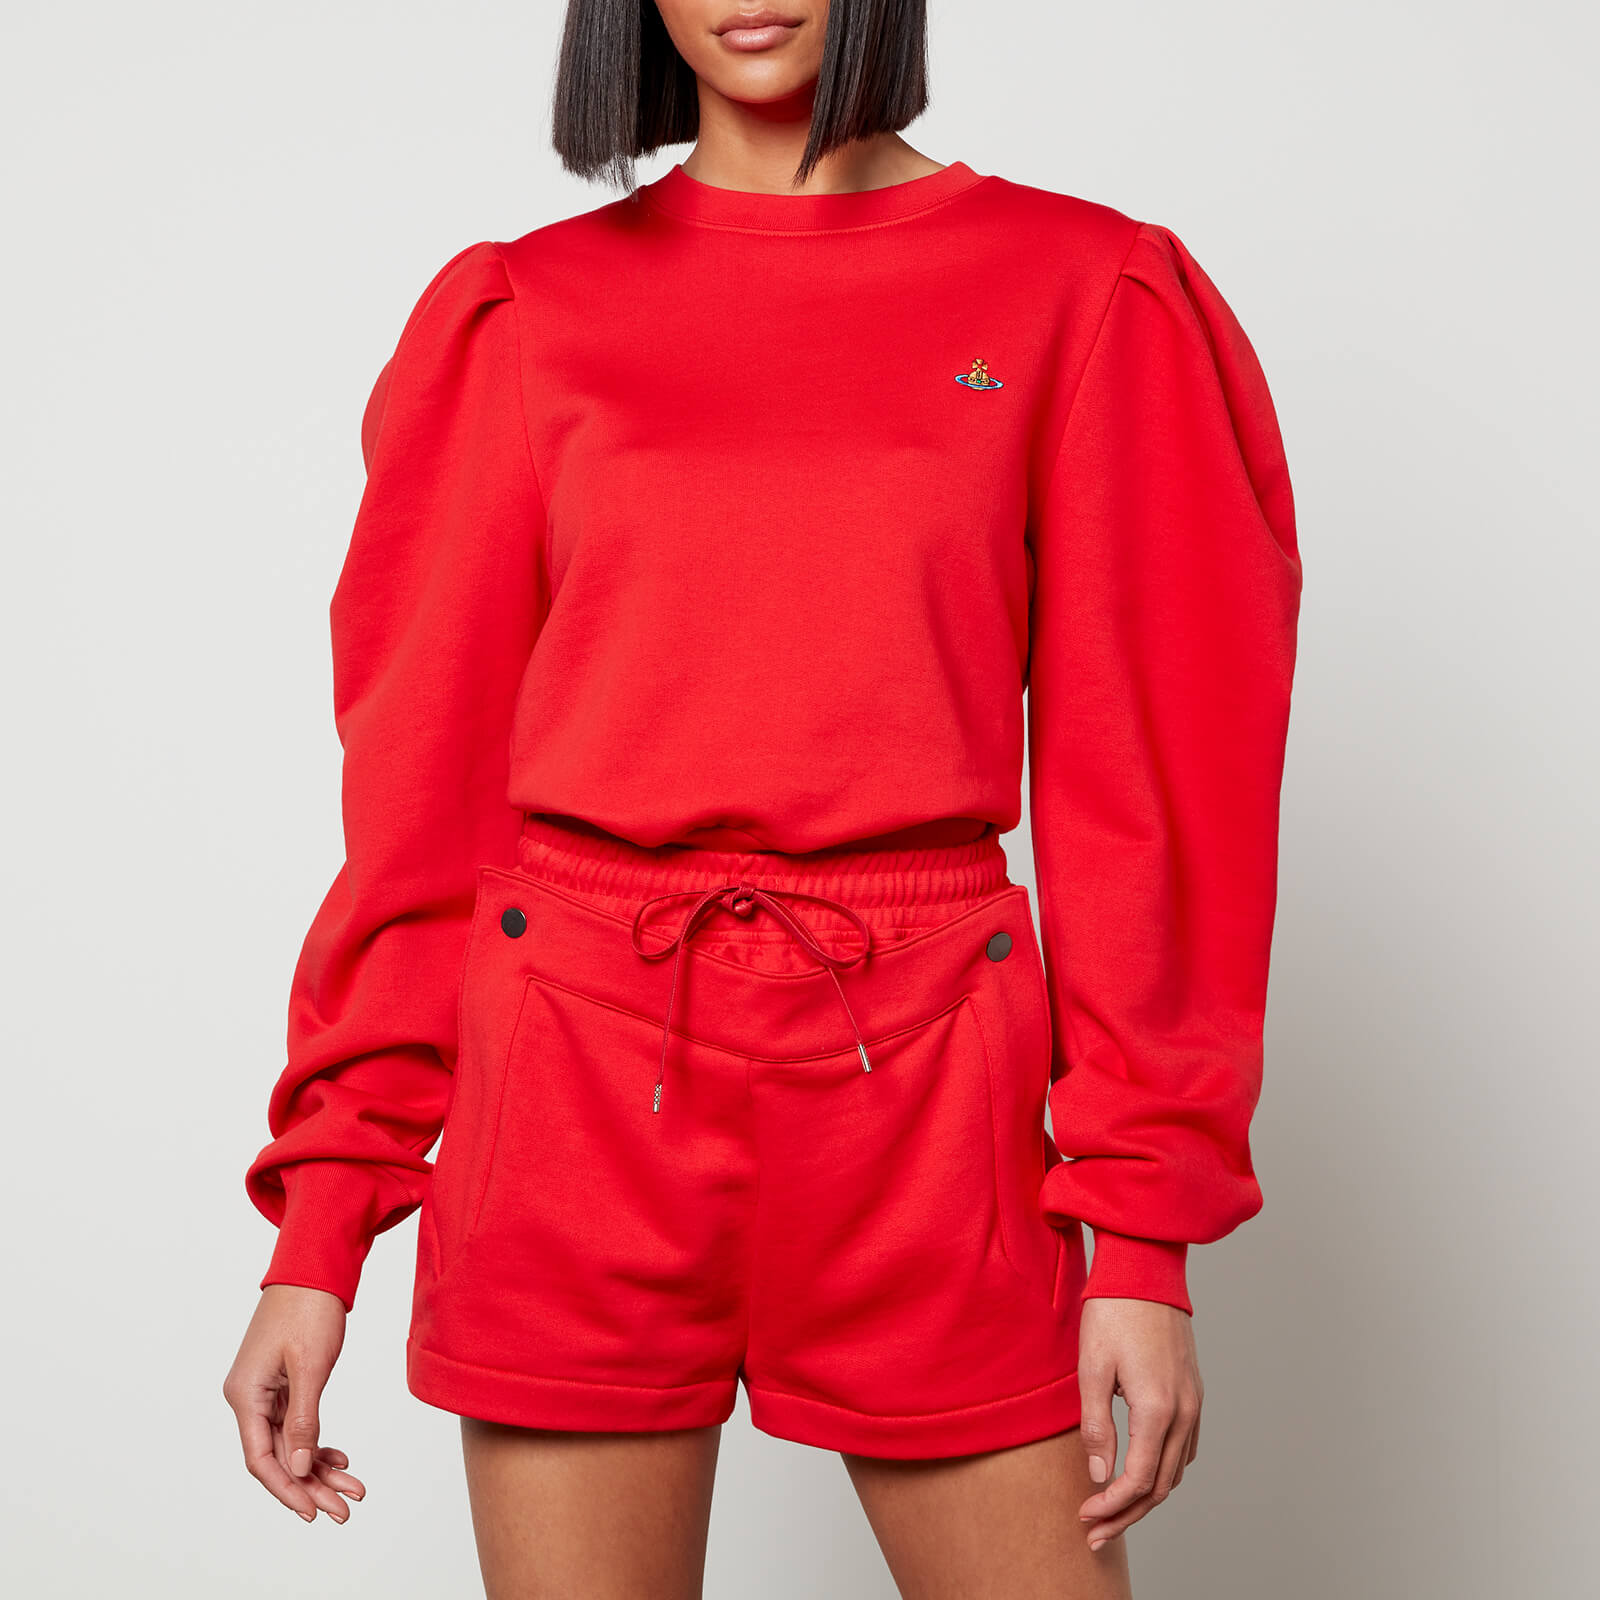 Vivienne Westwood Women's Aramis Sweatshirt - Red - XS